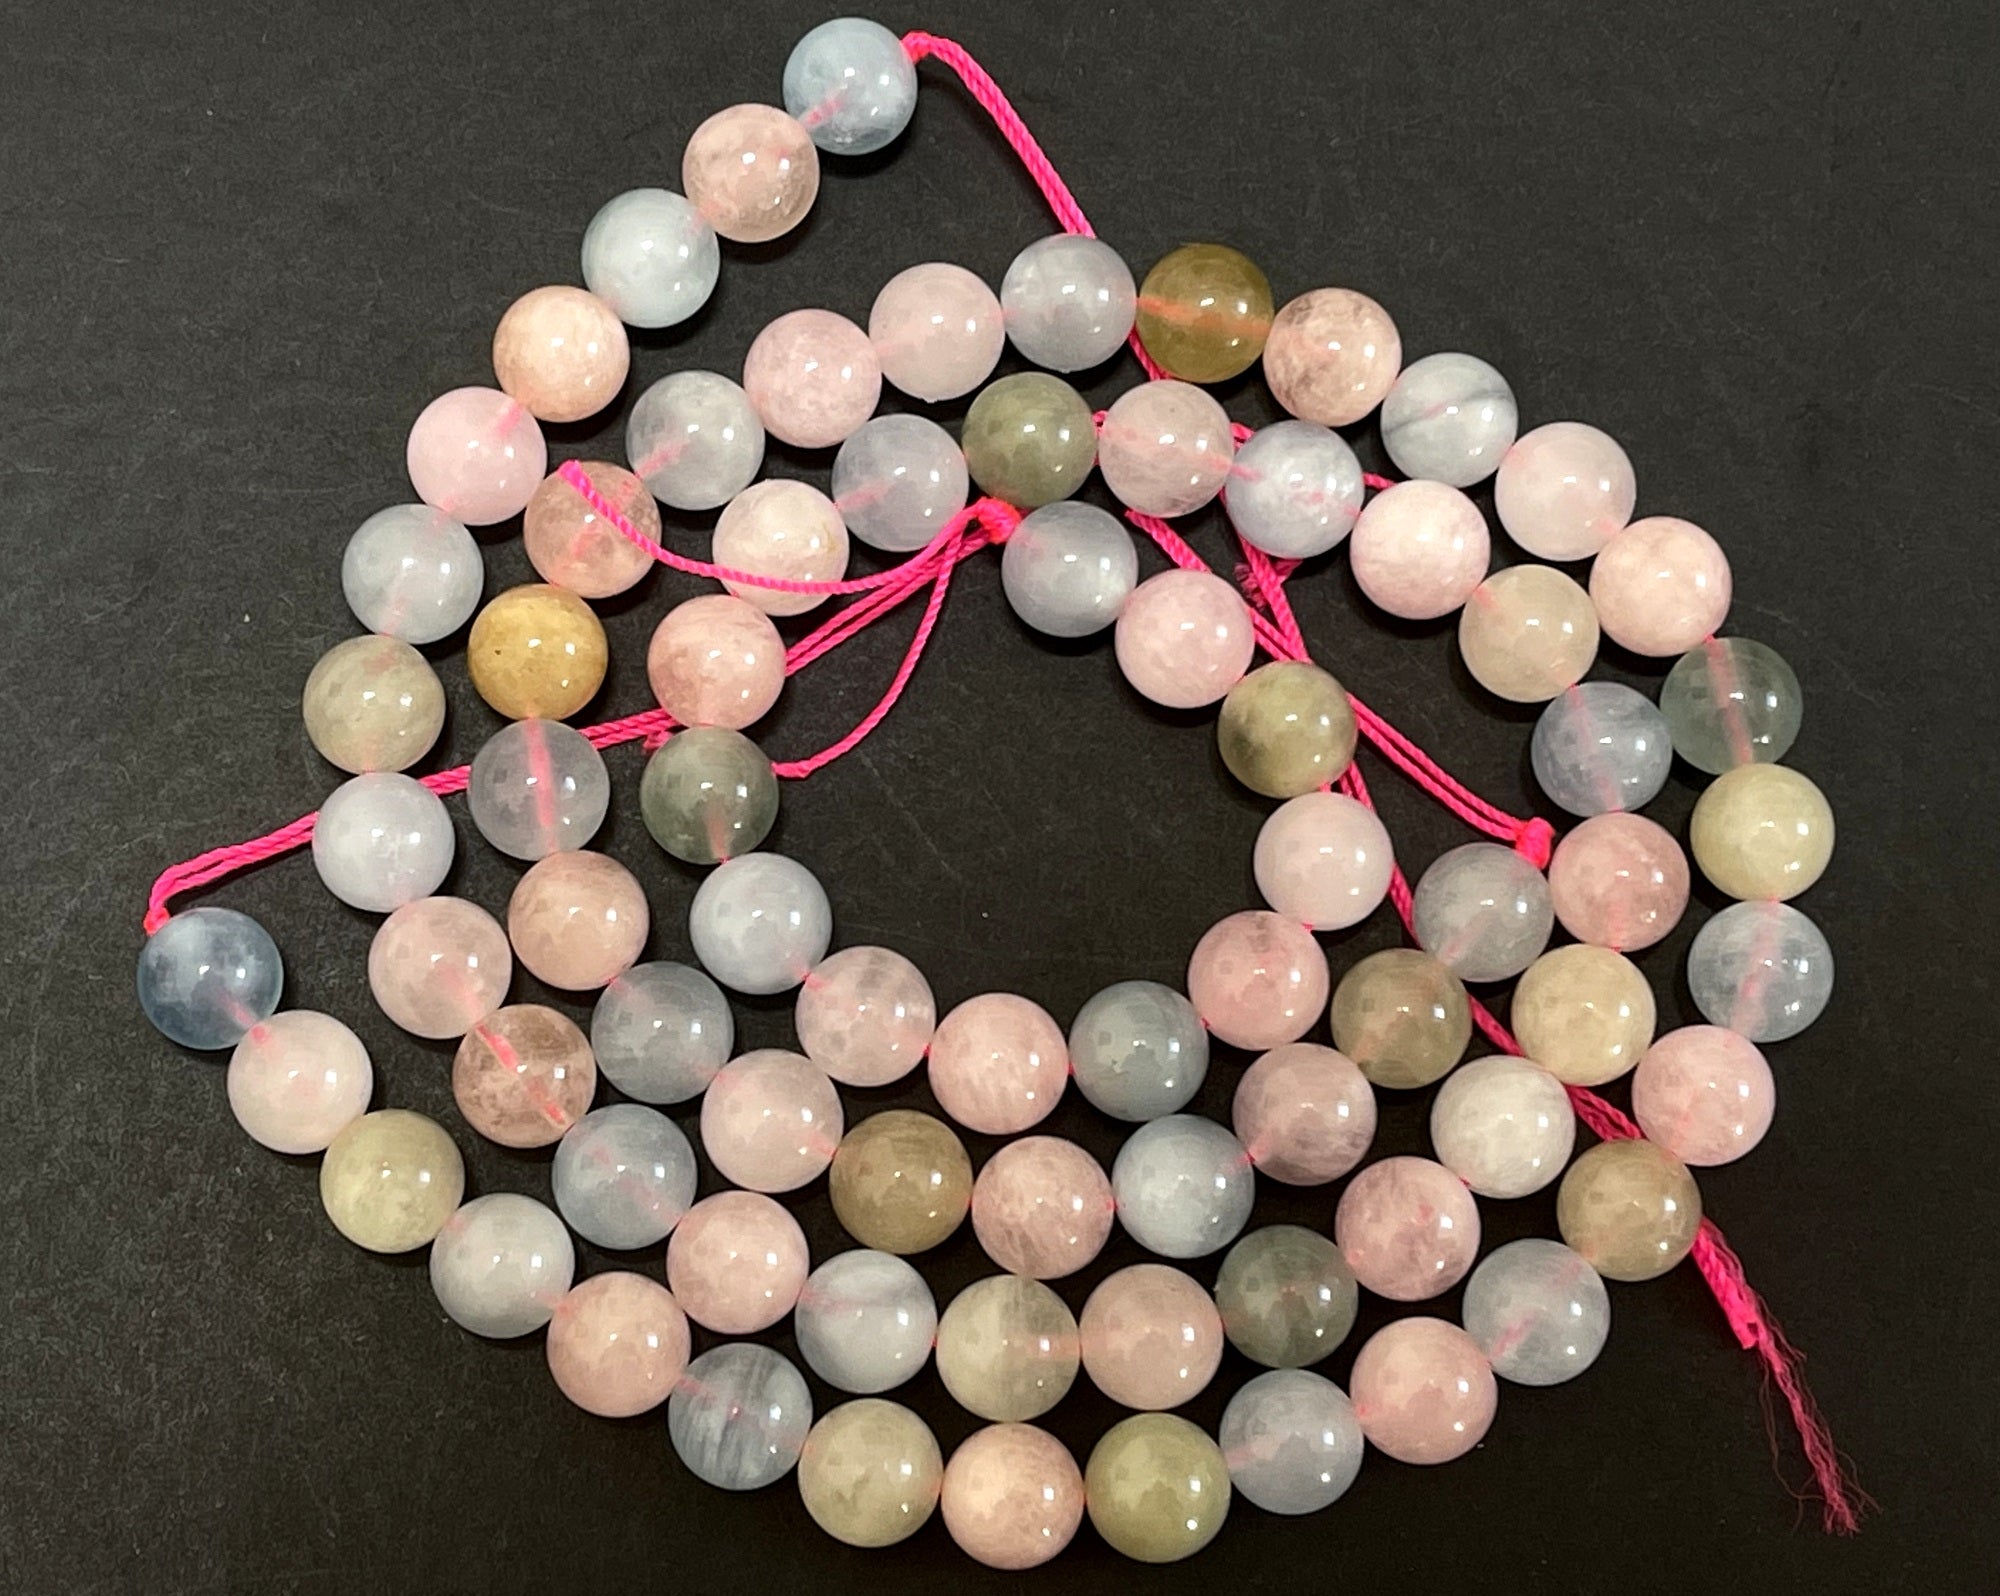 Morganite Beryl 10mm round natural gemstone beads 15.5" strand